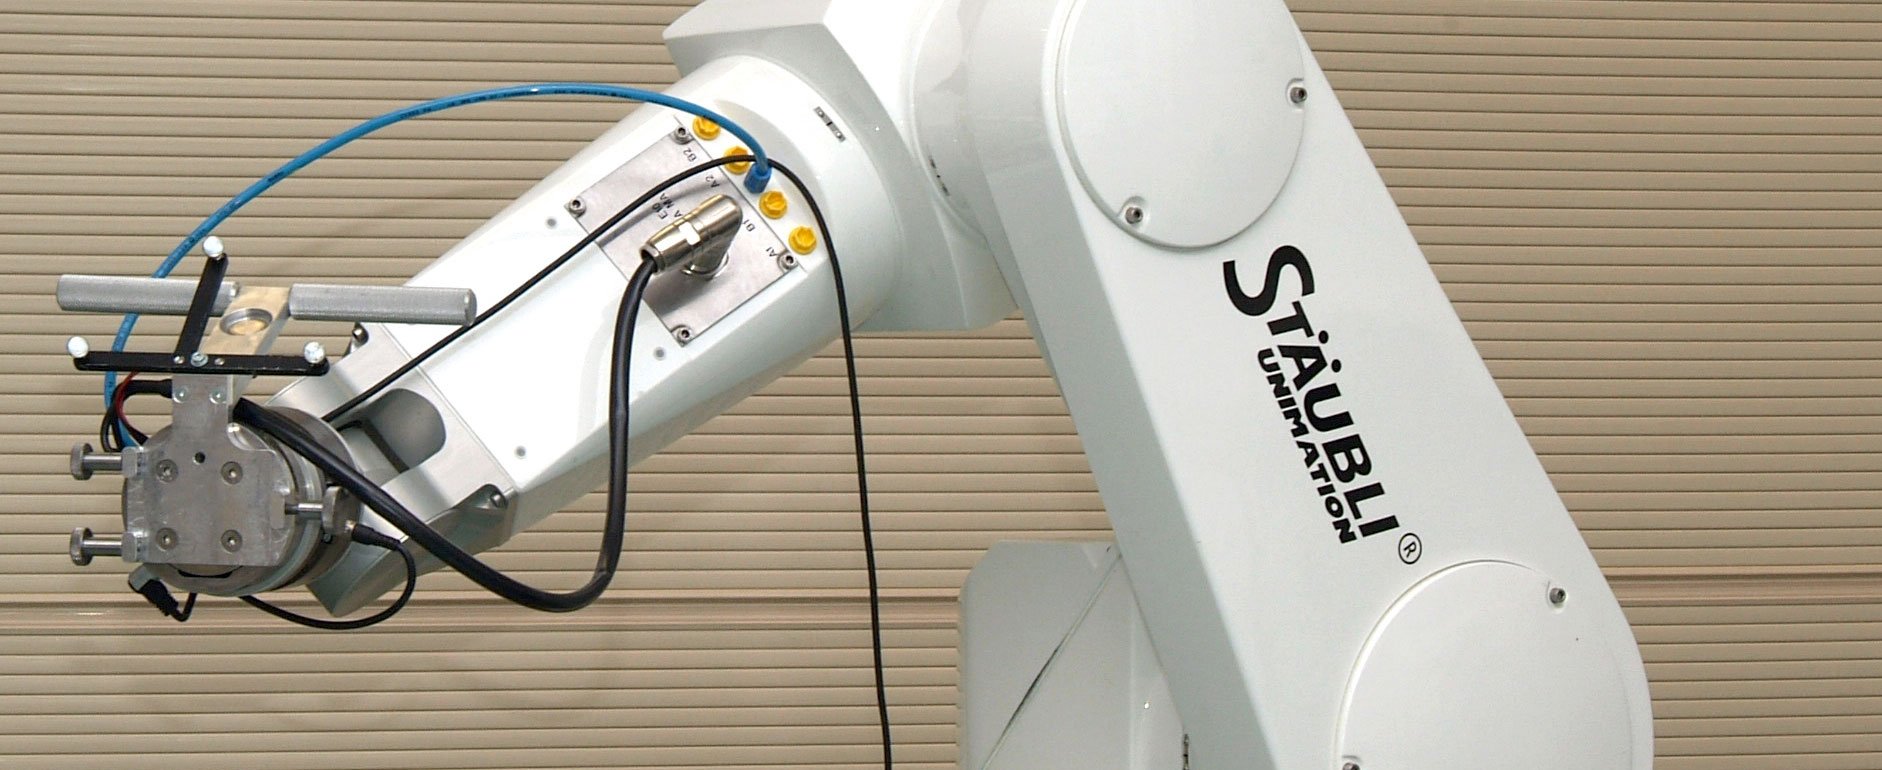 OP-Roboter im Labor mit Navigationswerkzeug